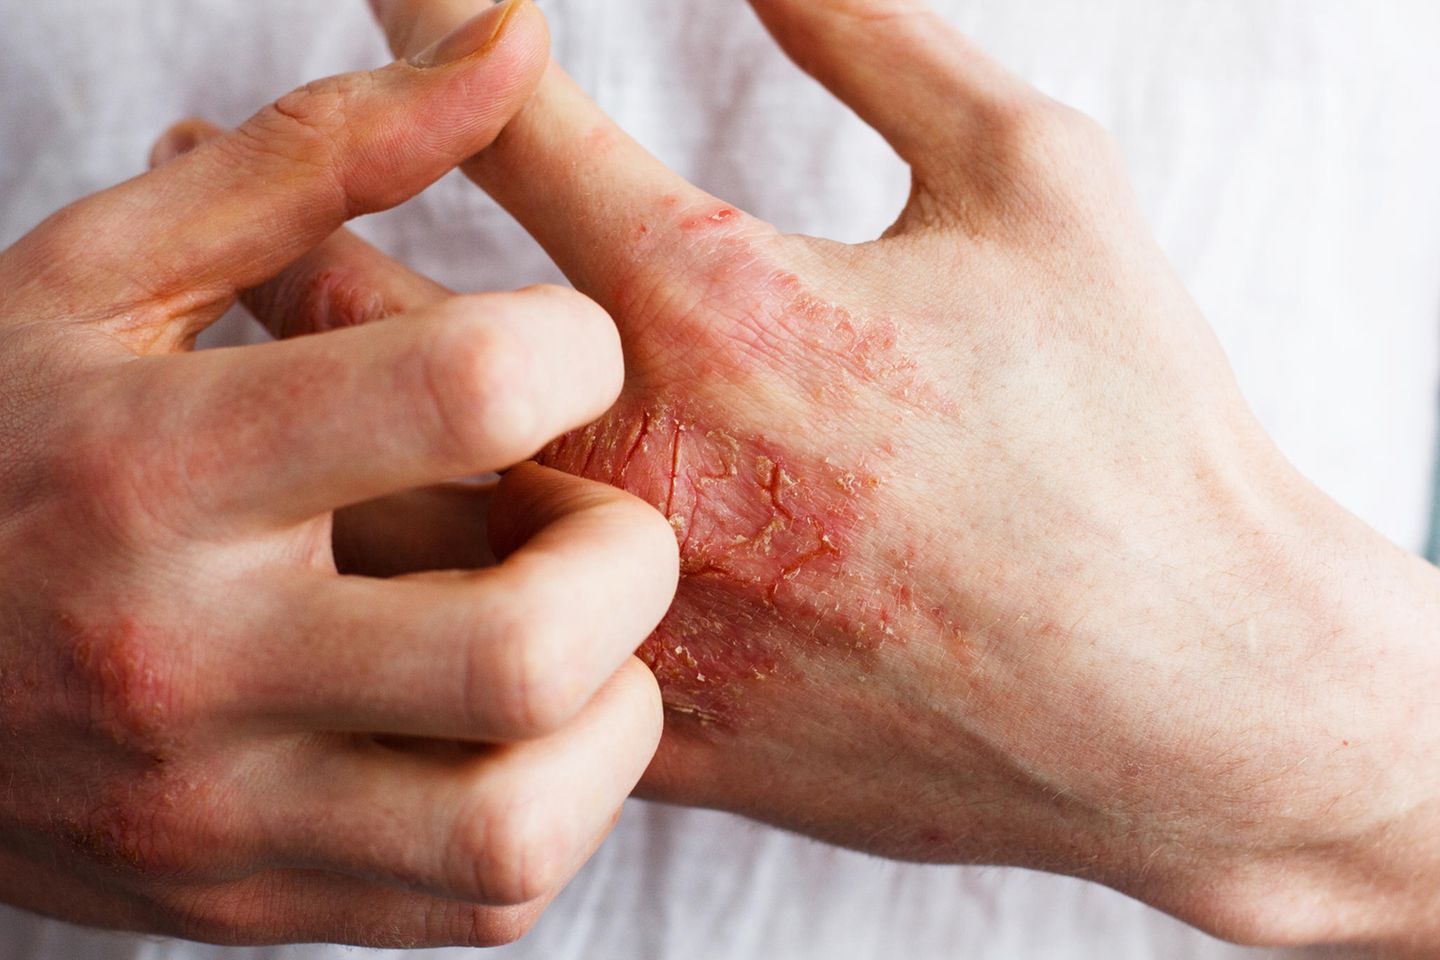 Schuppenflechte (Psoriasis vulgaris) ist eine entzündliche Erkrankung der Haut, die meist vererbt wird